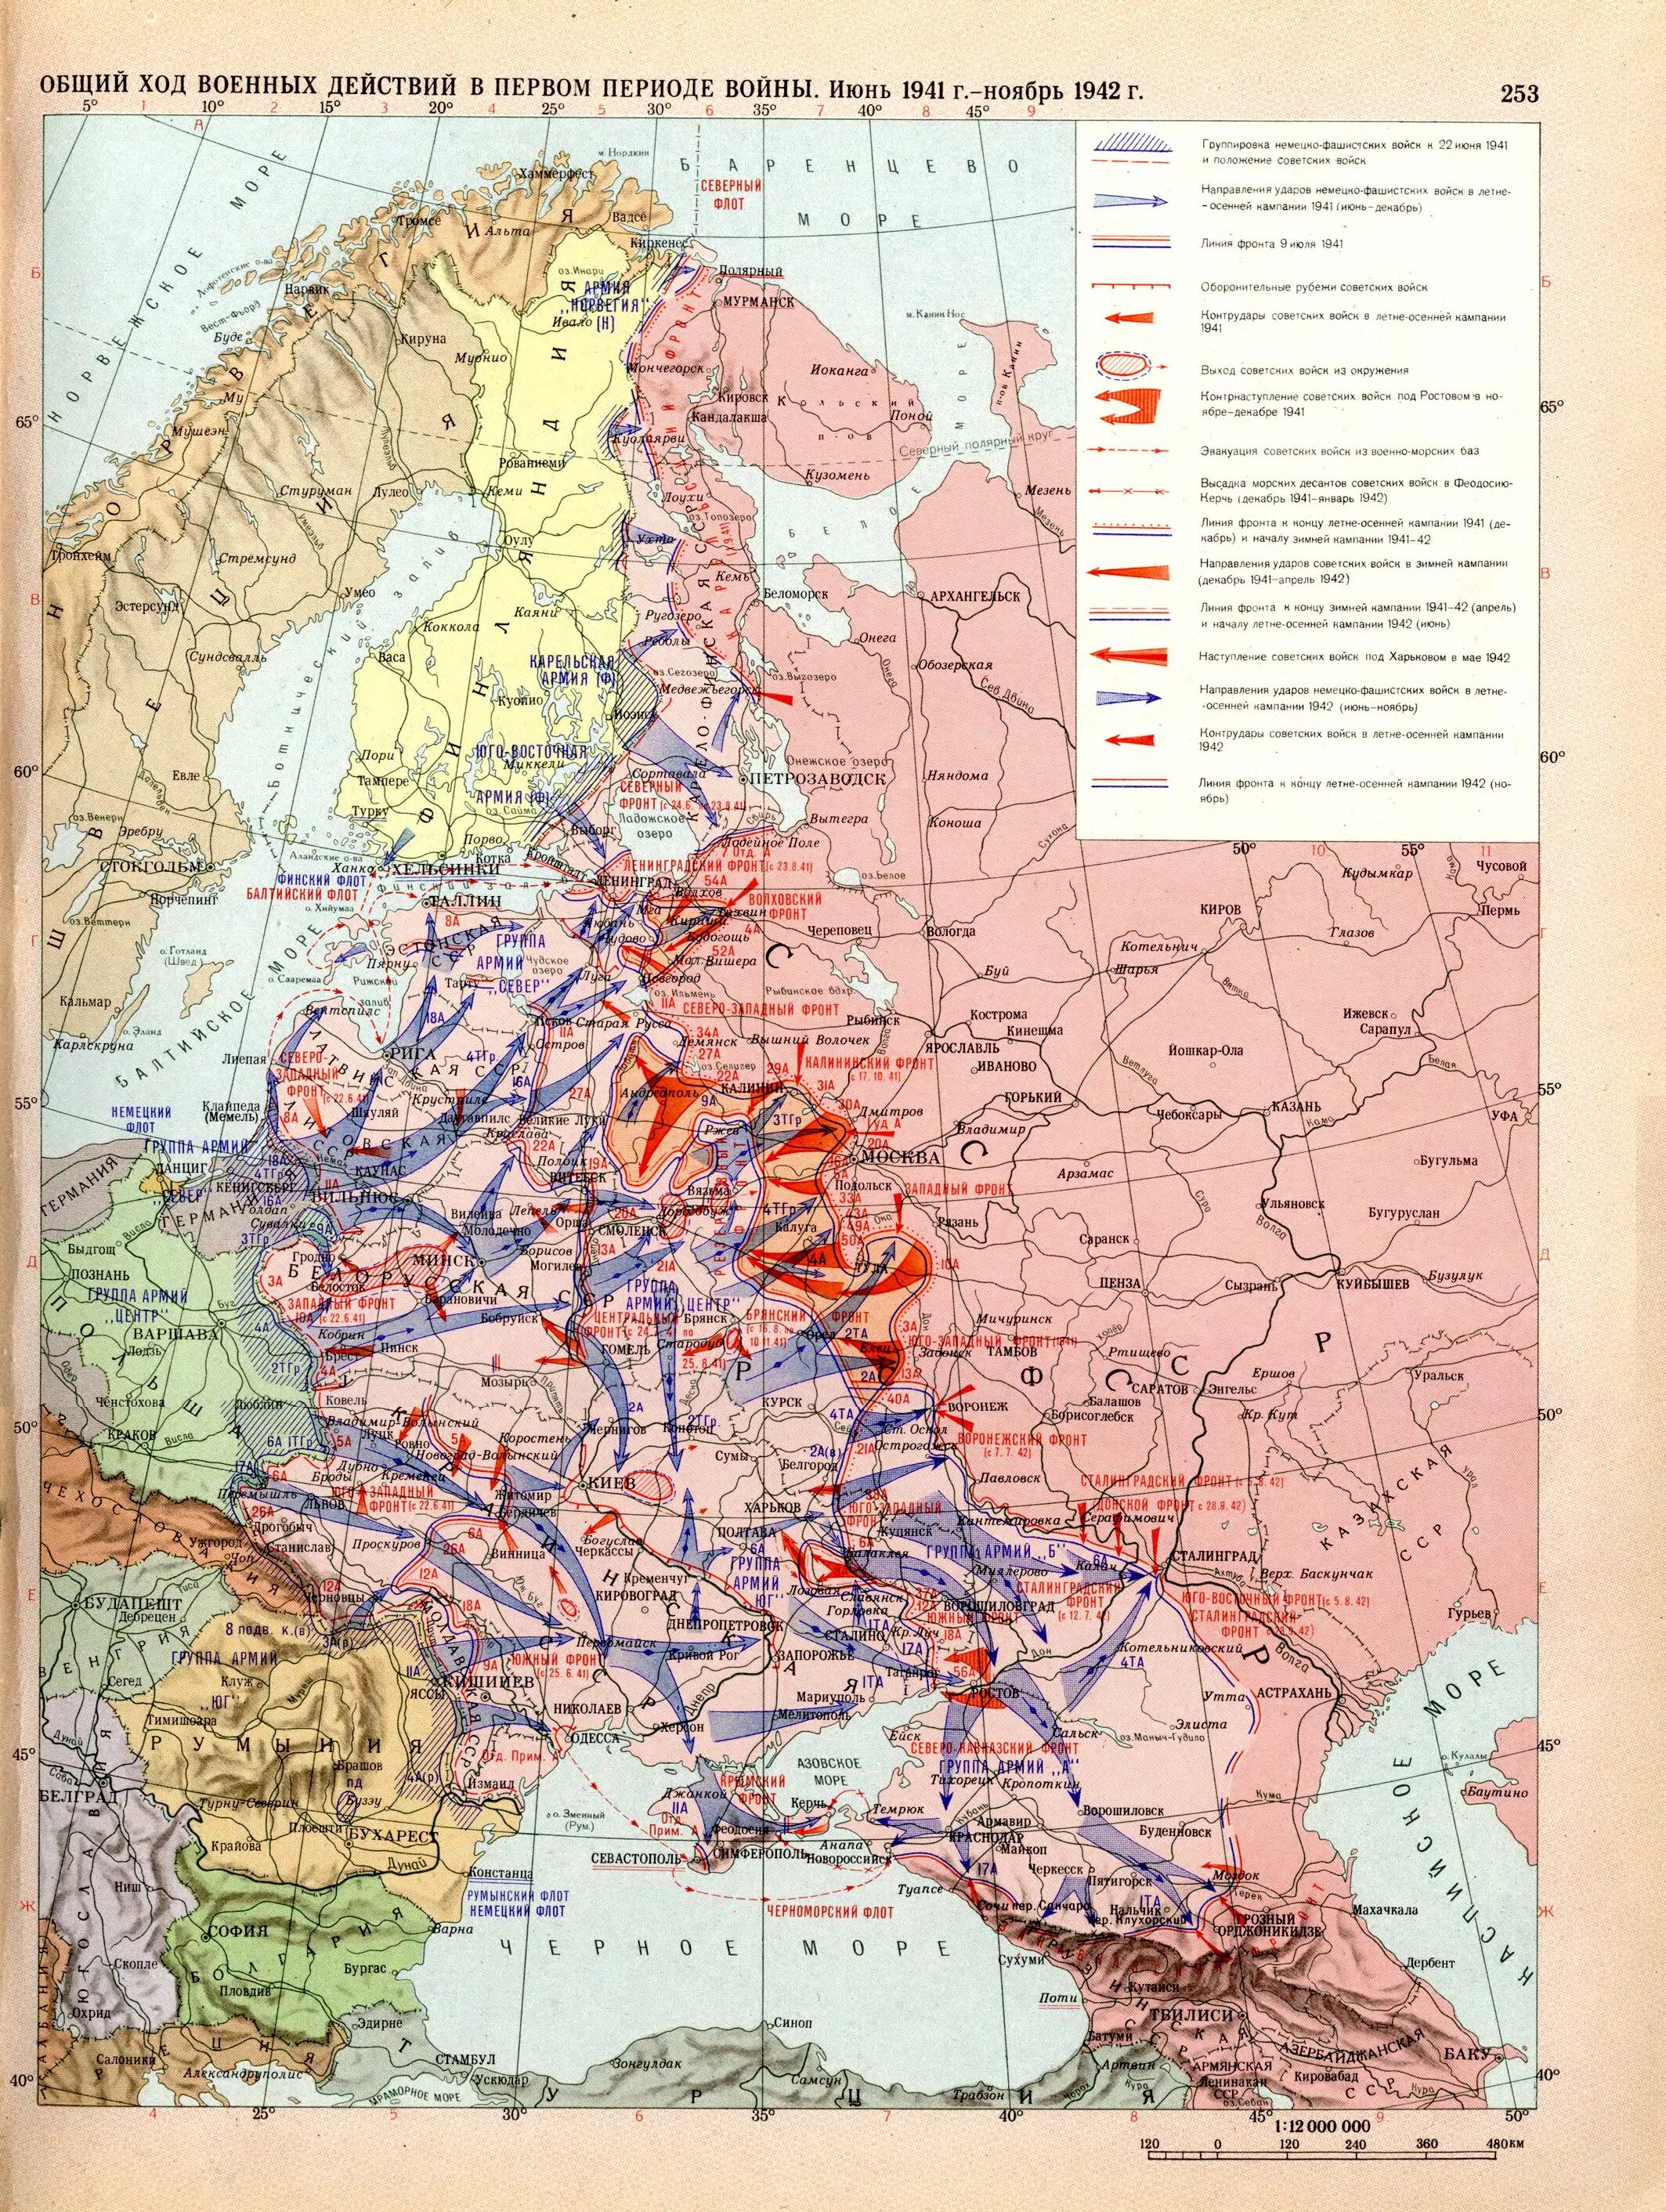 Ход боевых действий первой отечественной войны. Общий ход военных действий в 1941 1942 карта. Карта восточного фронта второй мировой войны 1941.